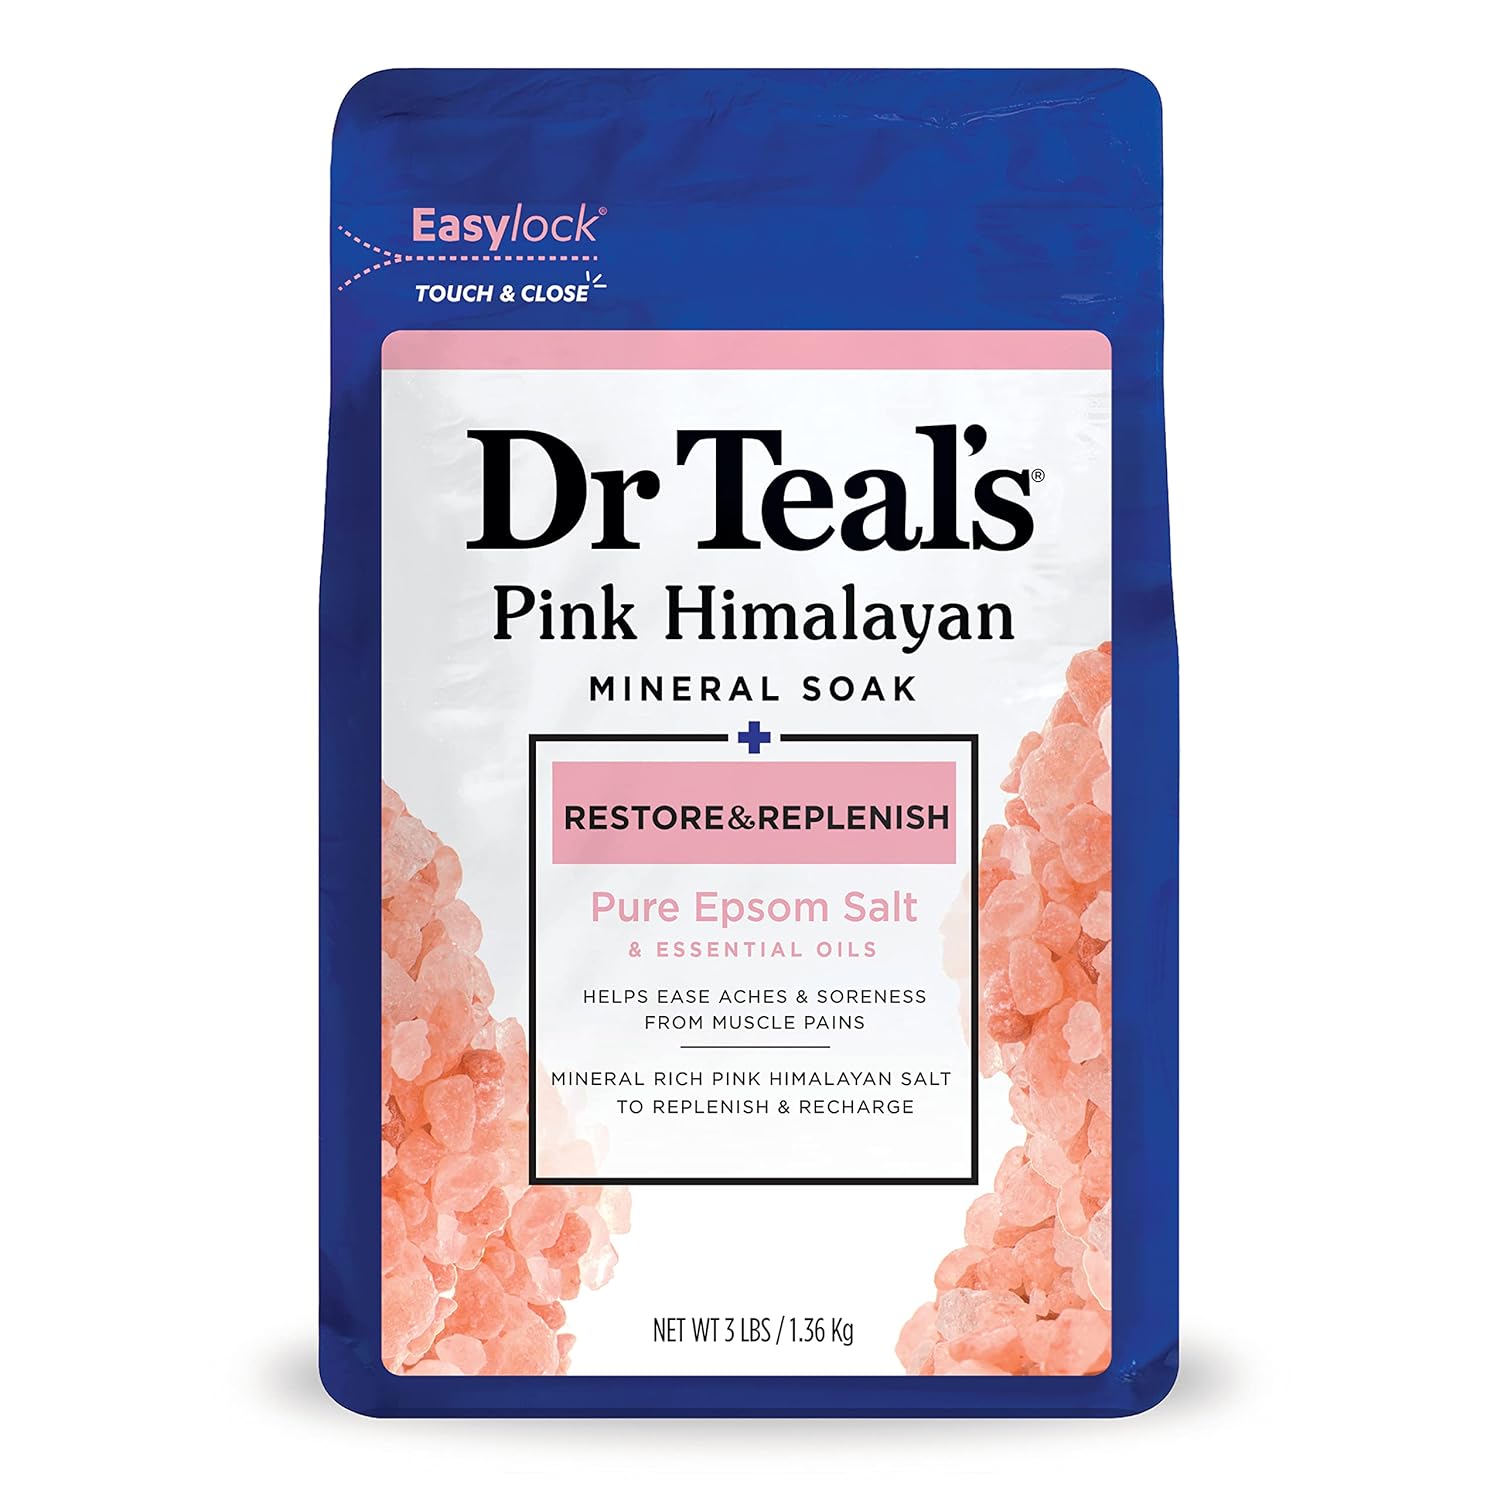 Dr Teal’s Restore & Replenish Solución para baño de sal mineral rosa del Himalaya con sal de Epsom